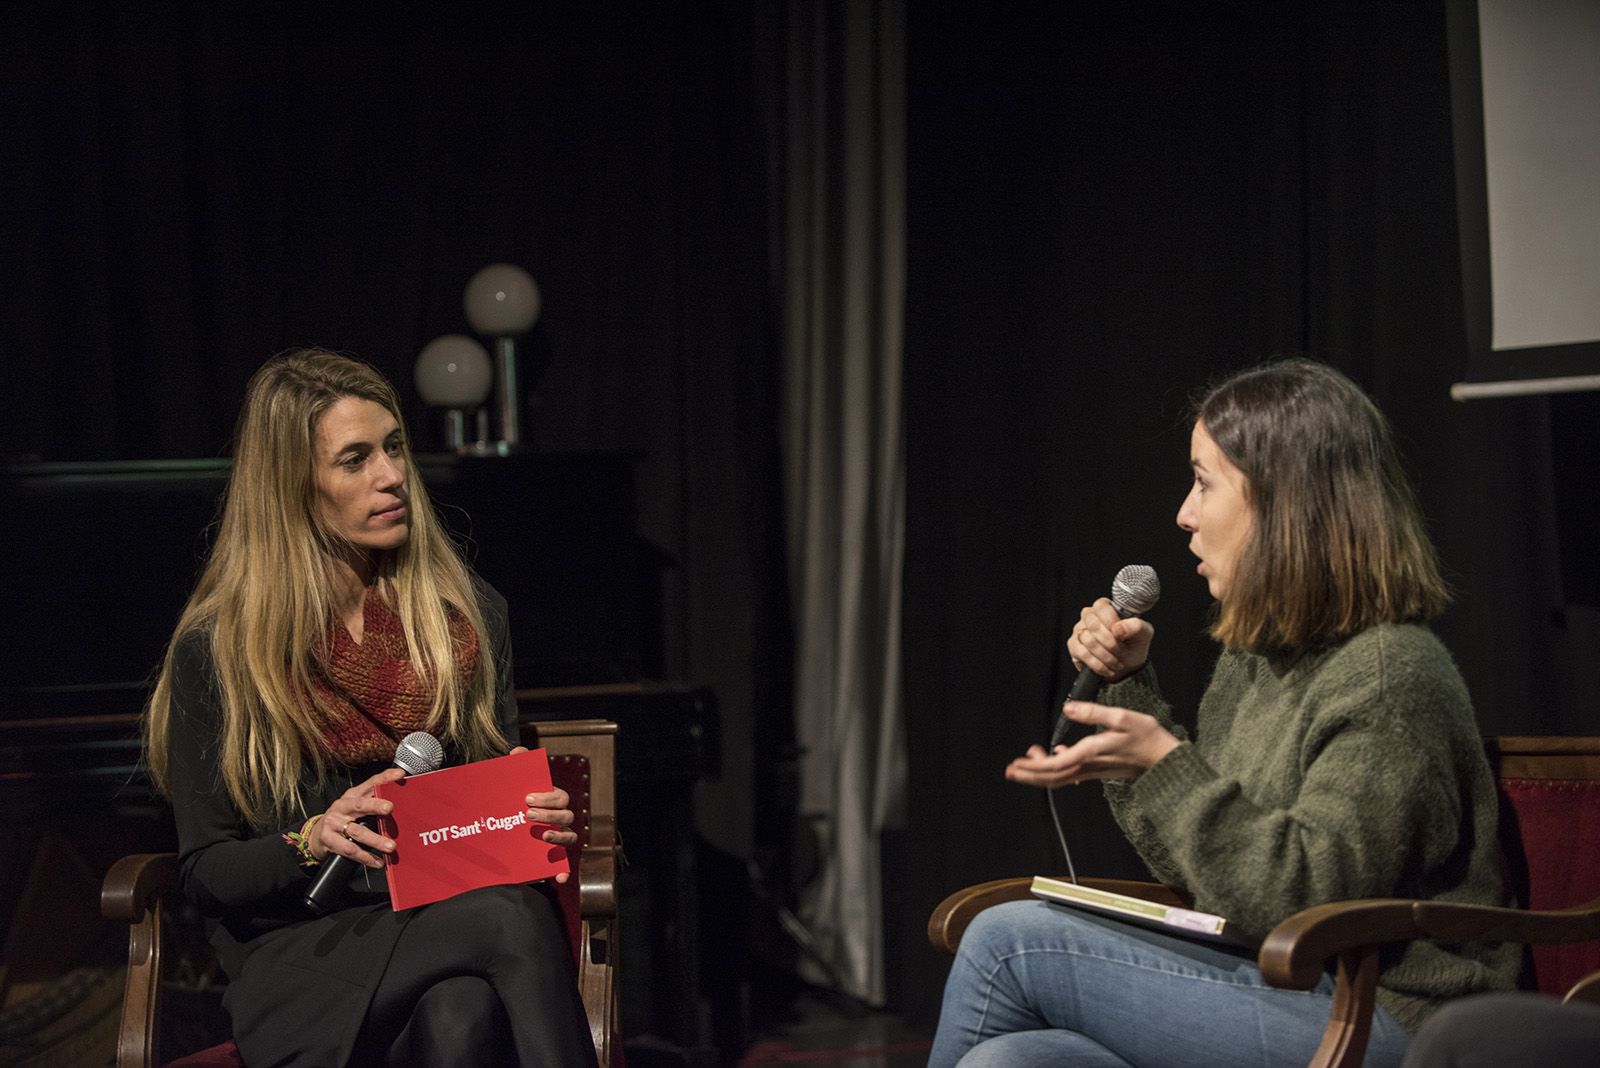 Les escriptores santcugatenques Gina Estapé i Chloé Sucrée presenten els seus respectius llibres. FOTO: Bernat Millet.